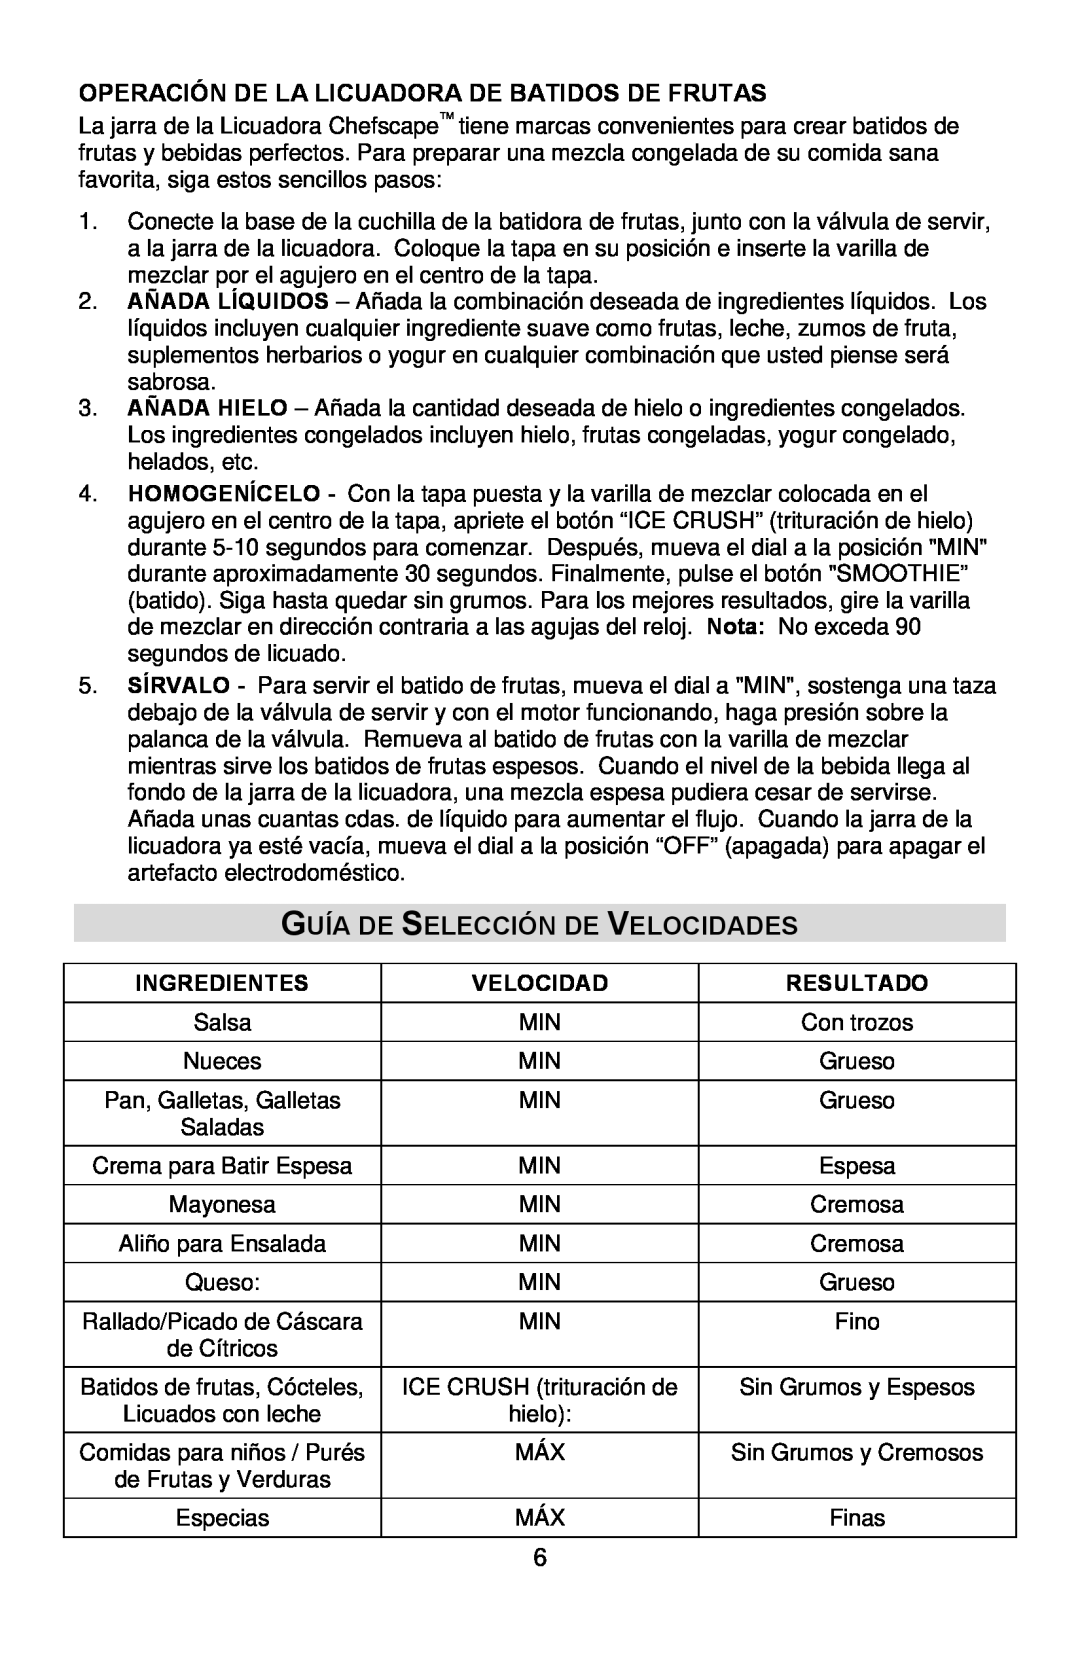 West Bend PBL1000, L5746 Guía De Selección De Velocidades, Operación De La Licuadora De Batidos De Frutas, Ingredientes 